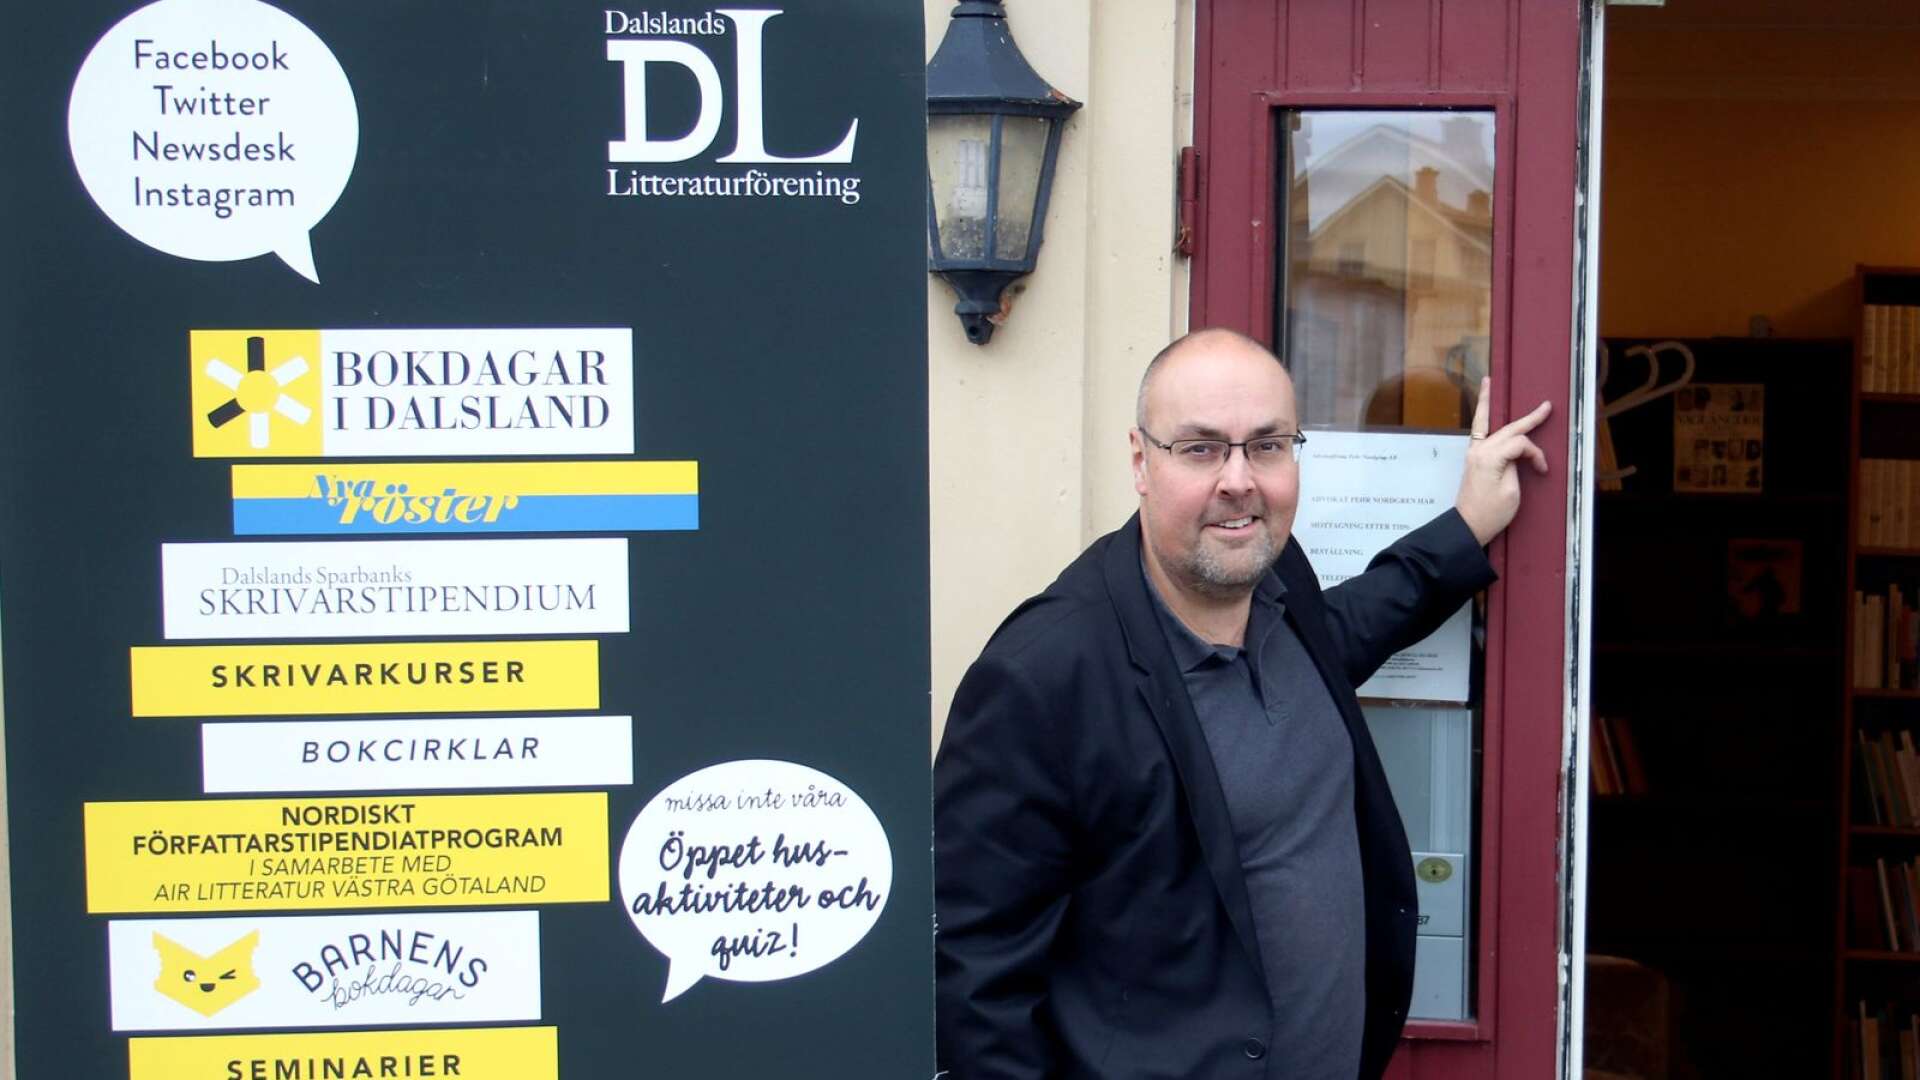 Dalslands Litteraturförening, som arrangerar Bokdagar i Dalsland, är en av de dalsländska föreningar som får pengar av Kulturrådet. Något som glädjer Victor Estby, verksamhetsledare för föreningen.